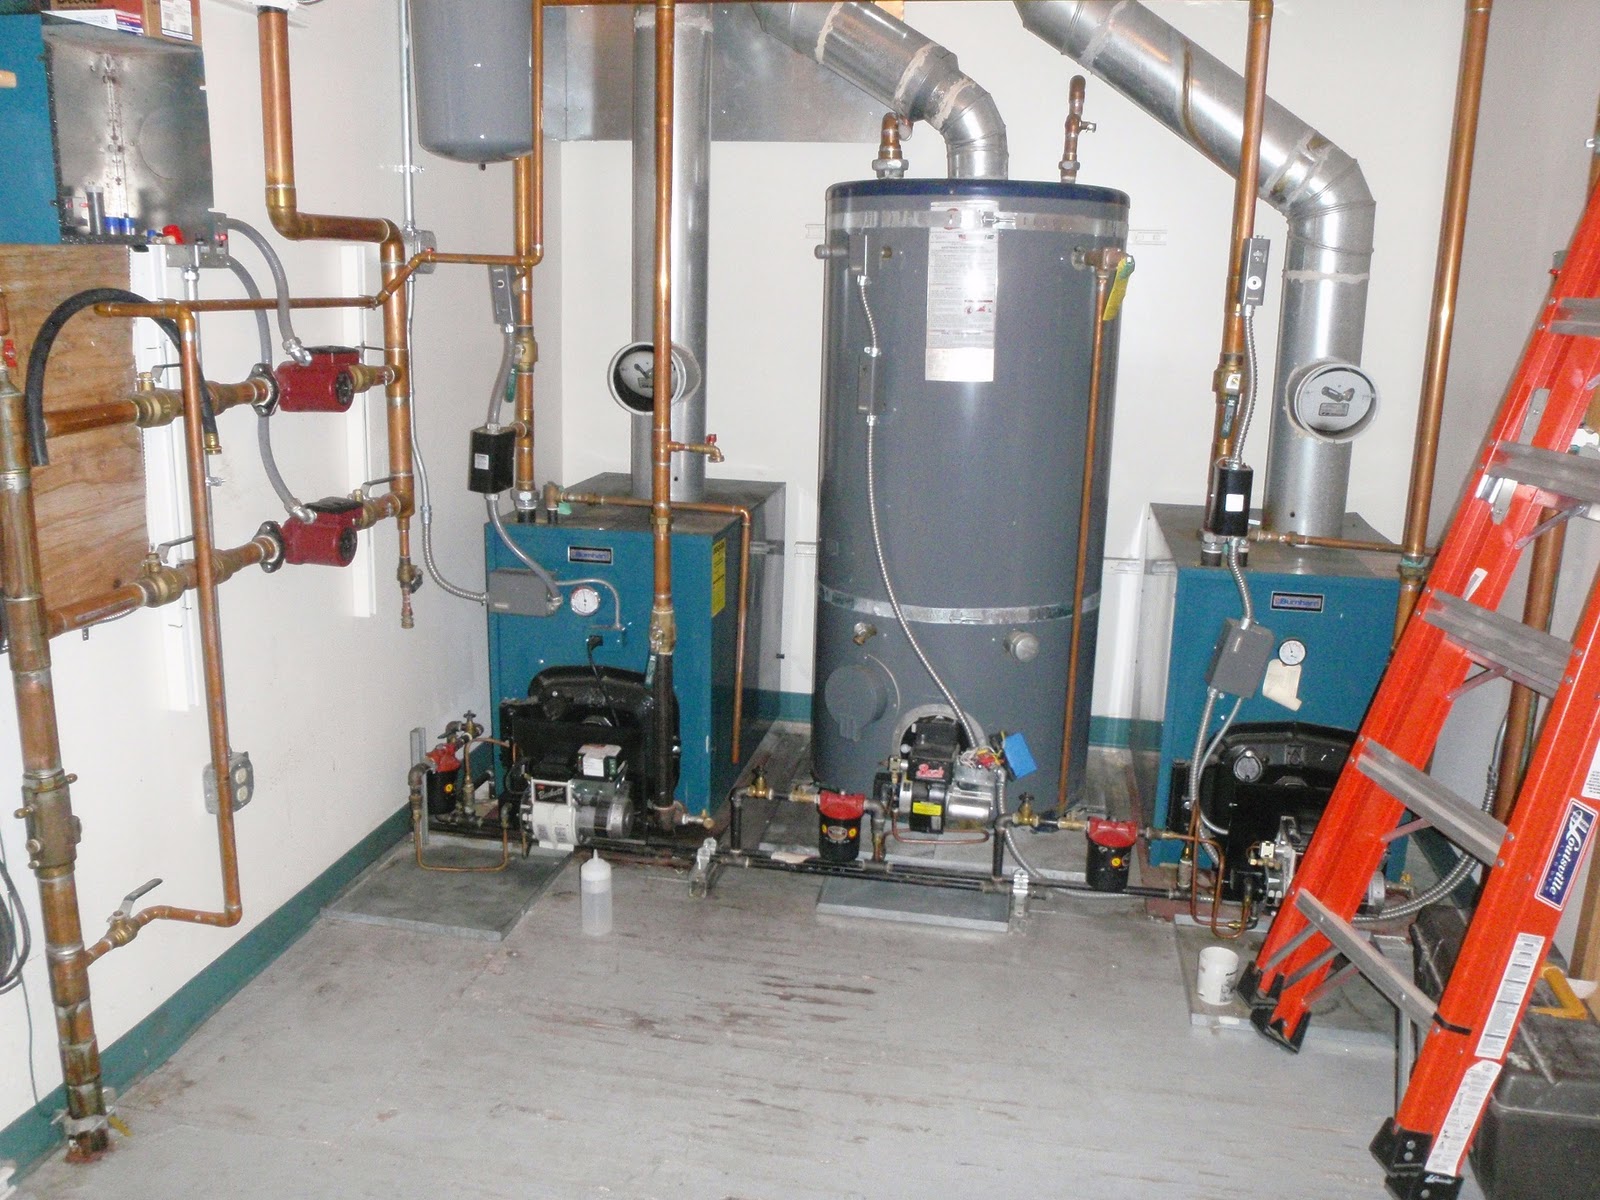 Jim Kerns Heating Cooling,oil burner, heating system,fuel oil